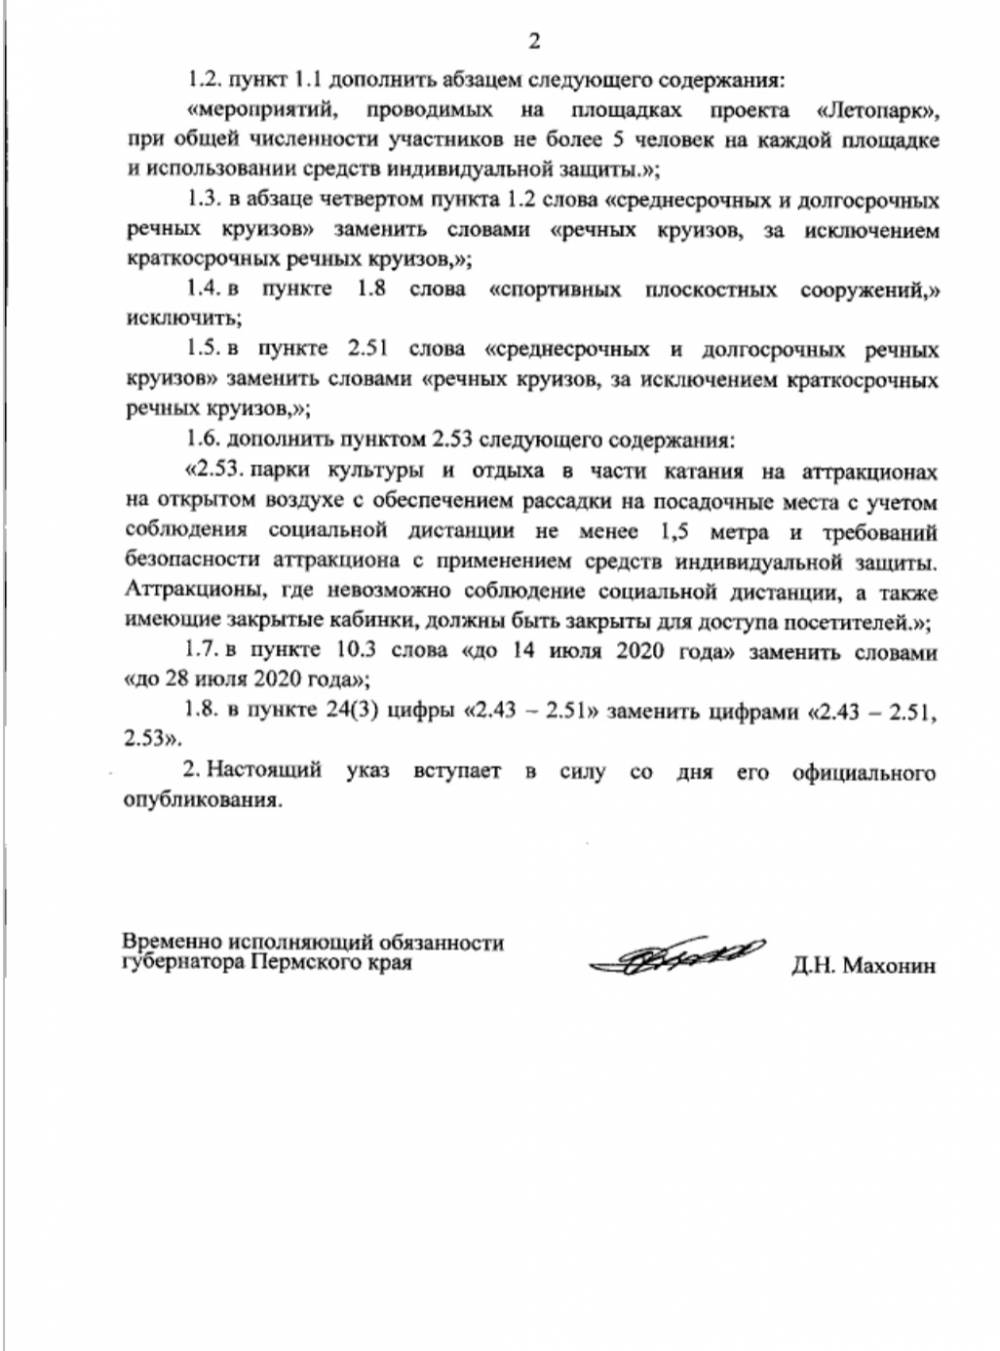 ​Опубликован указ губернатора с изменениями в режим самоизоляции в Пермском крае